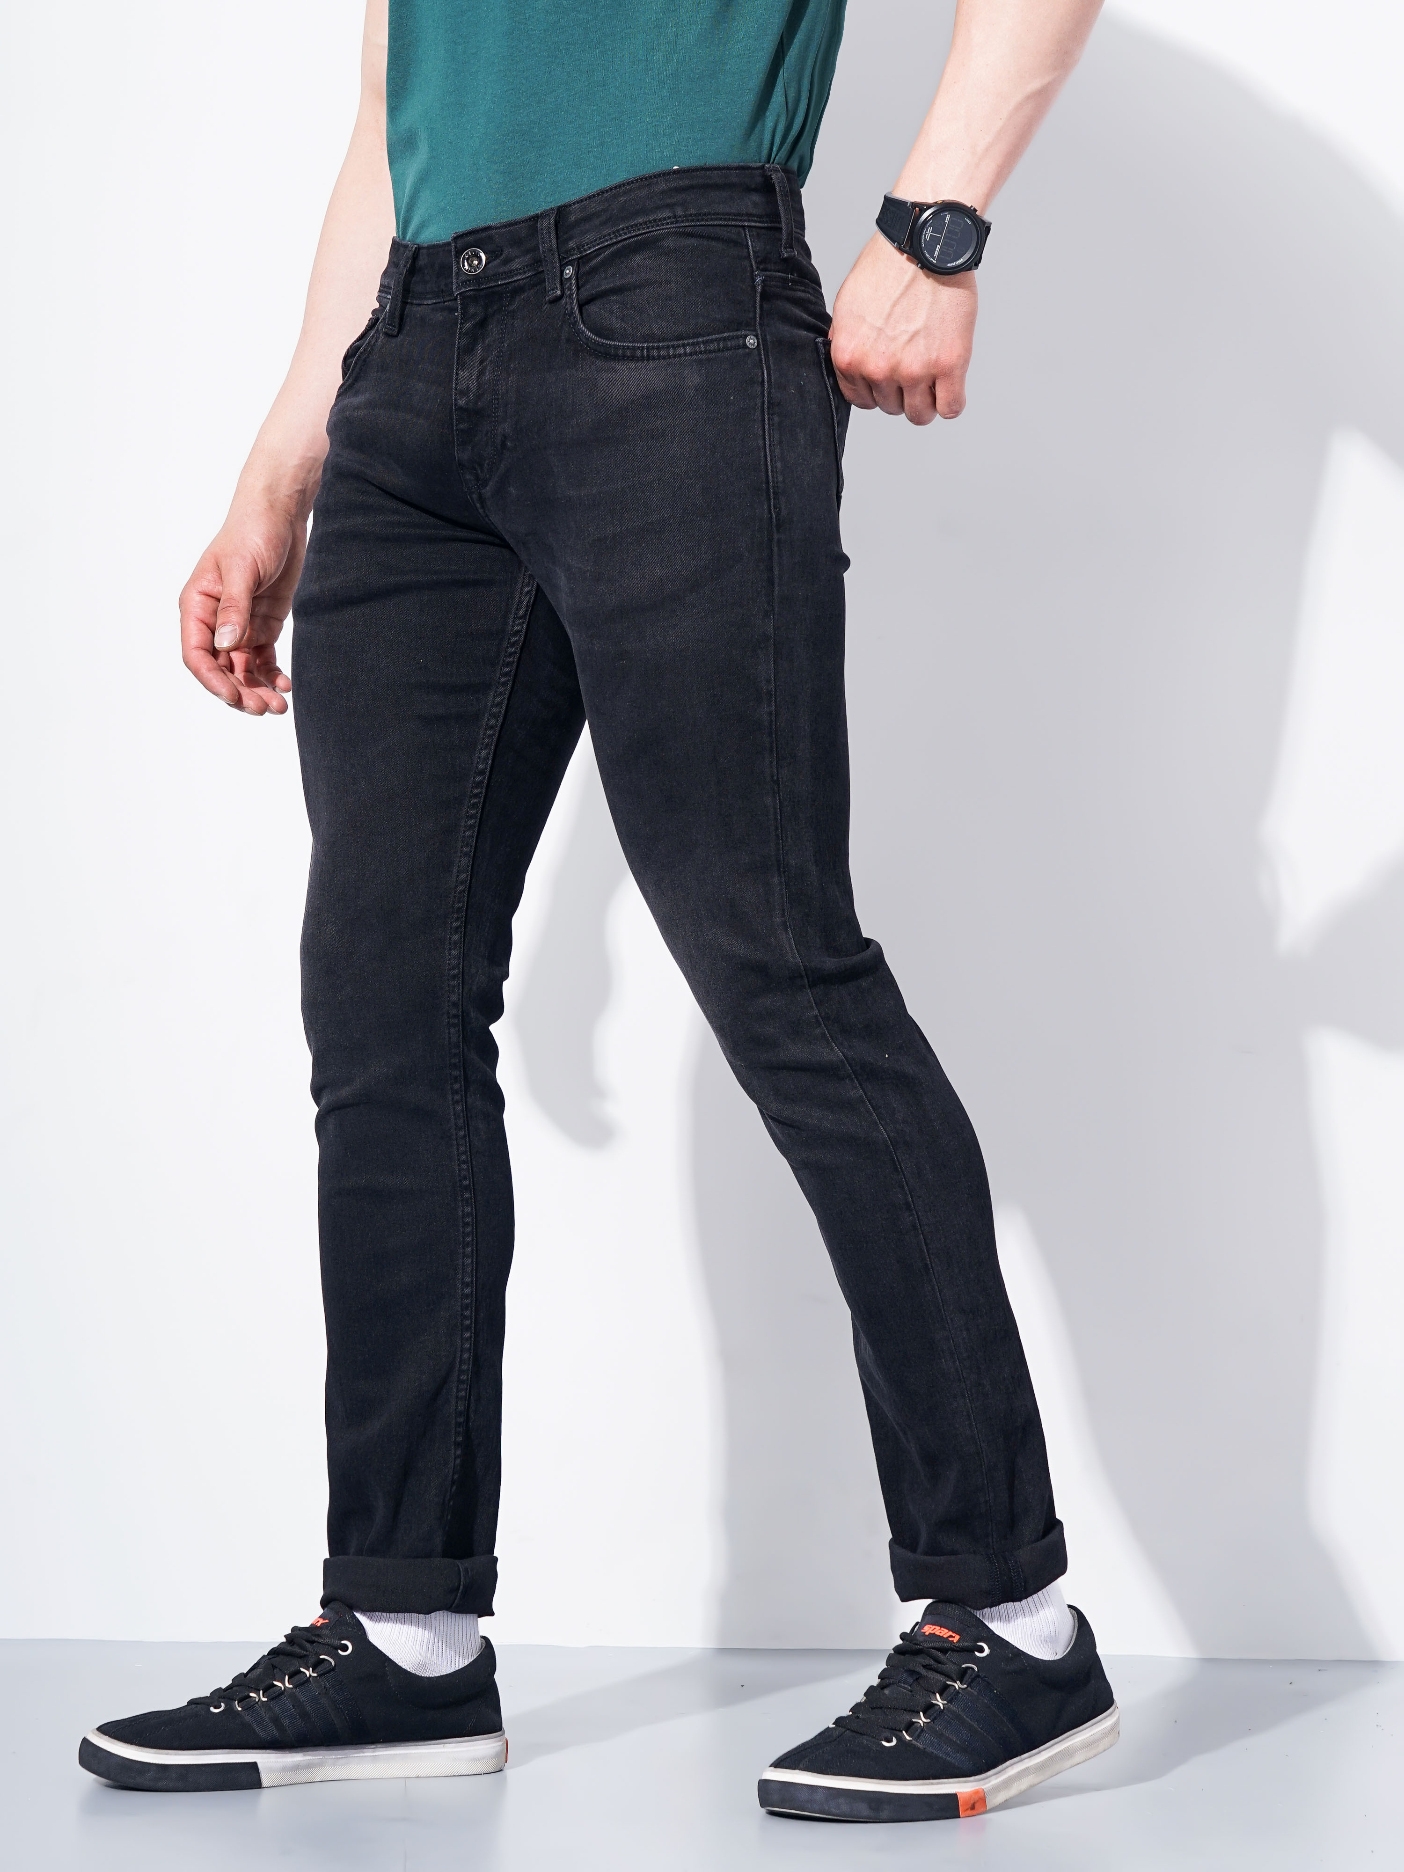 Men's Black Cotton Solid Regular Jeans